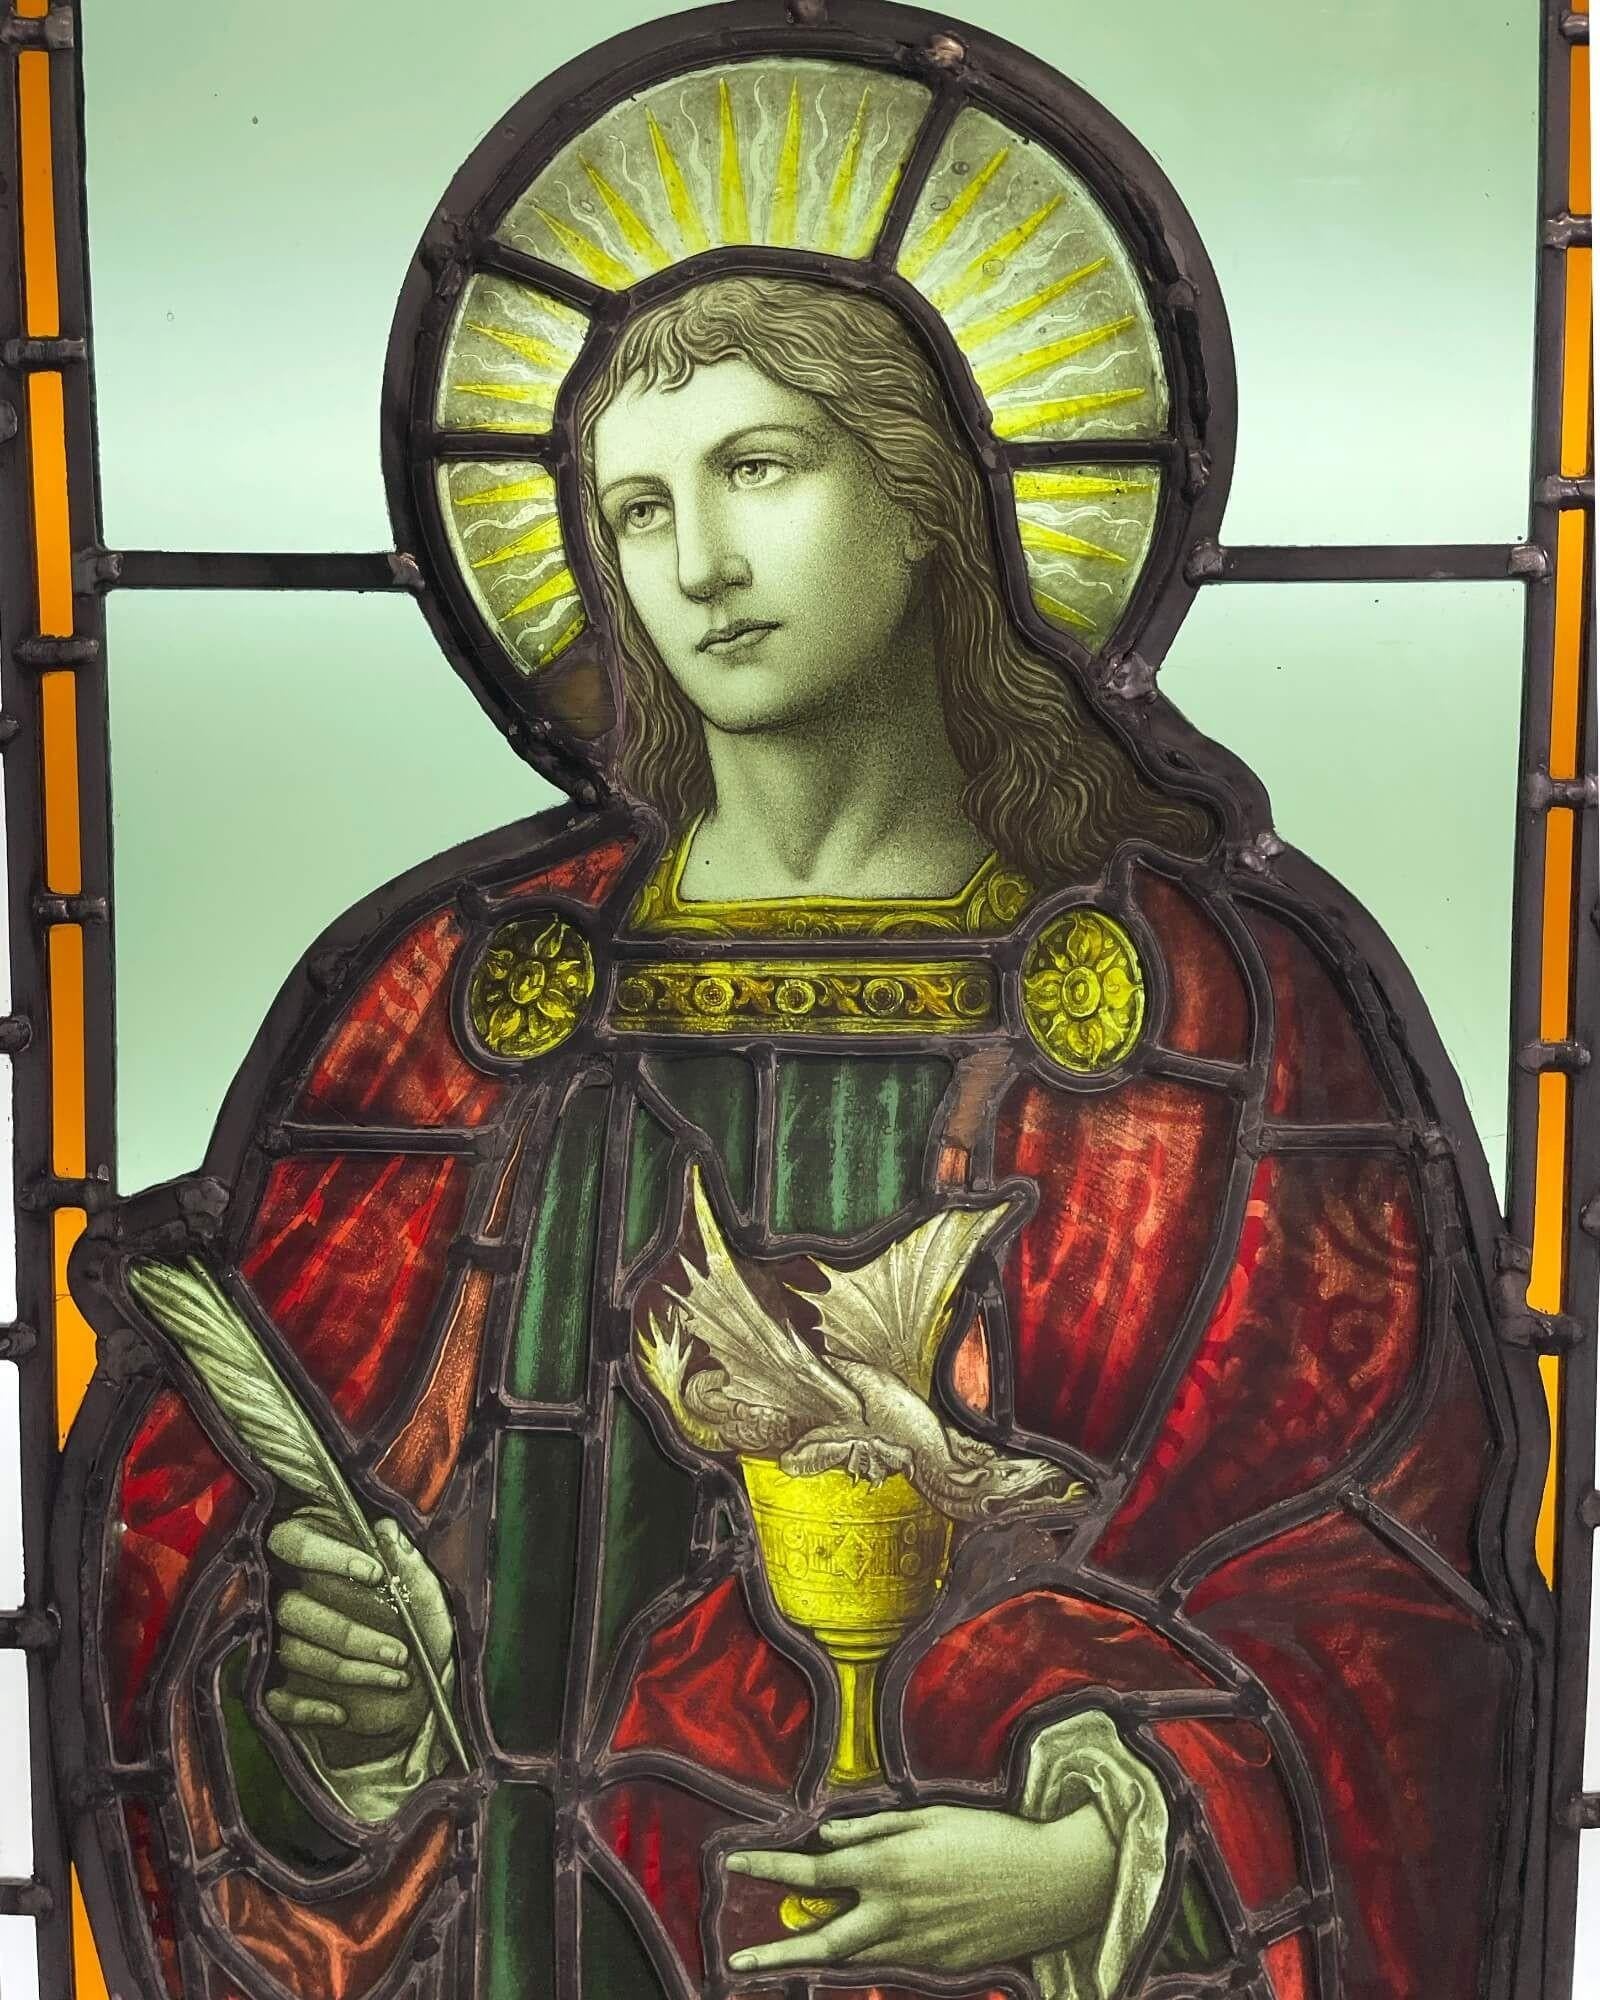 Un grand et impressionnant vitrail ancien représentant saint Jean, l'évangéliste, datant d'environ 1860. Dans cette étonnante pièce de verrerie, le Saint est représenté dans une draperie rouge vif, une plume d'oie dans une main - représentant son